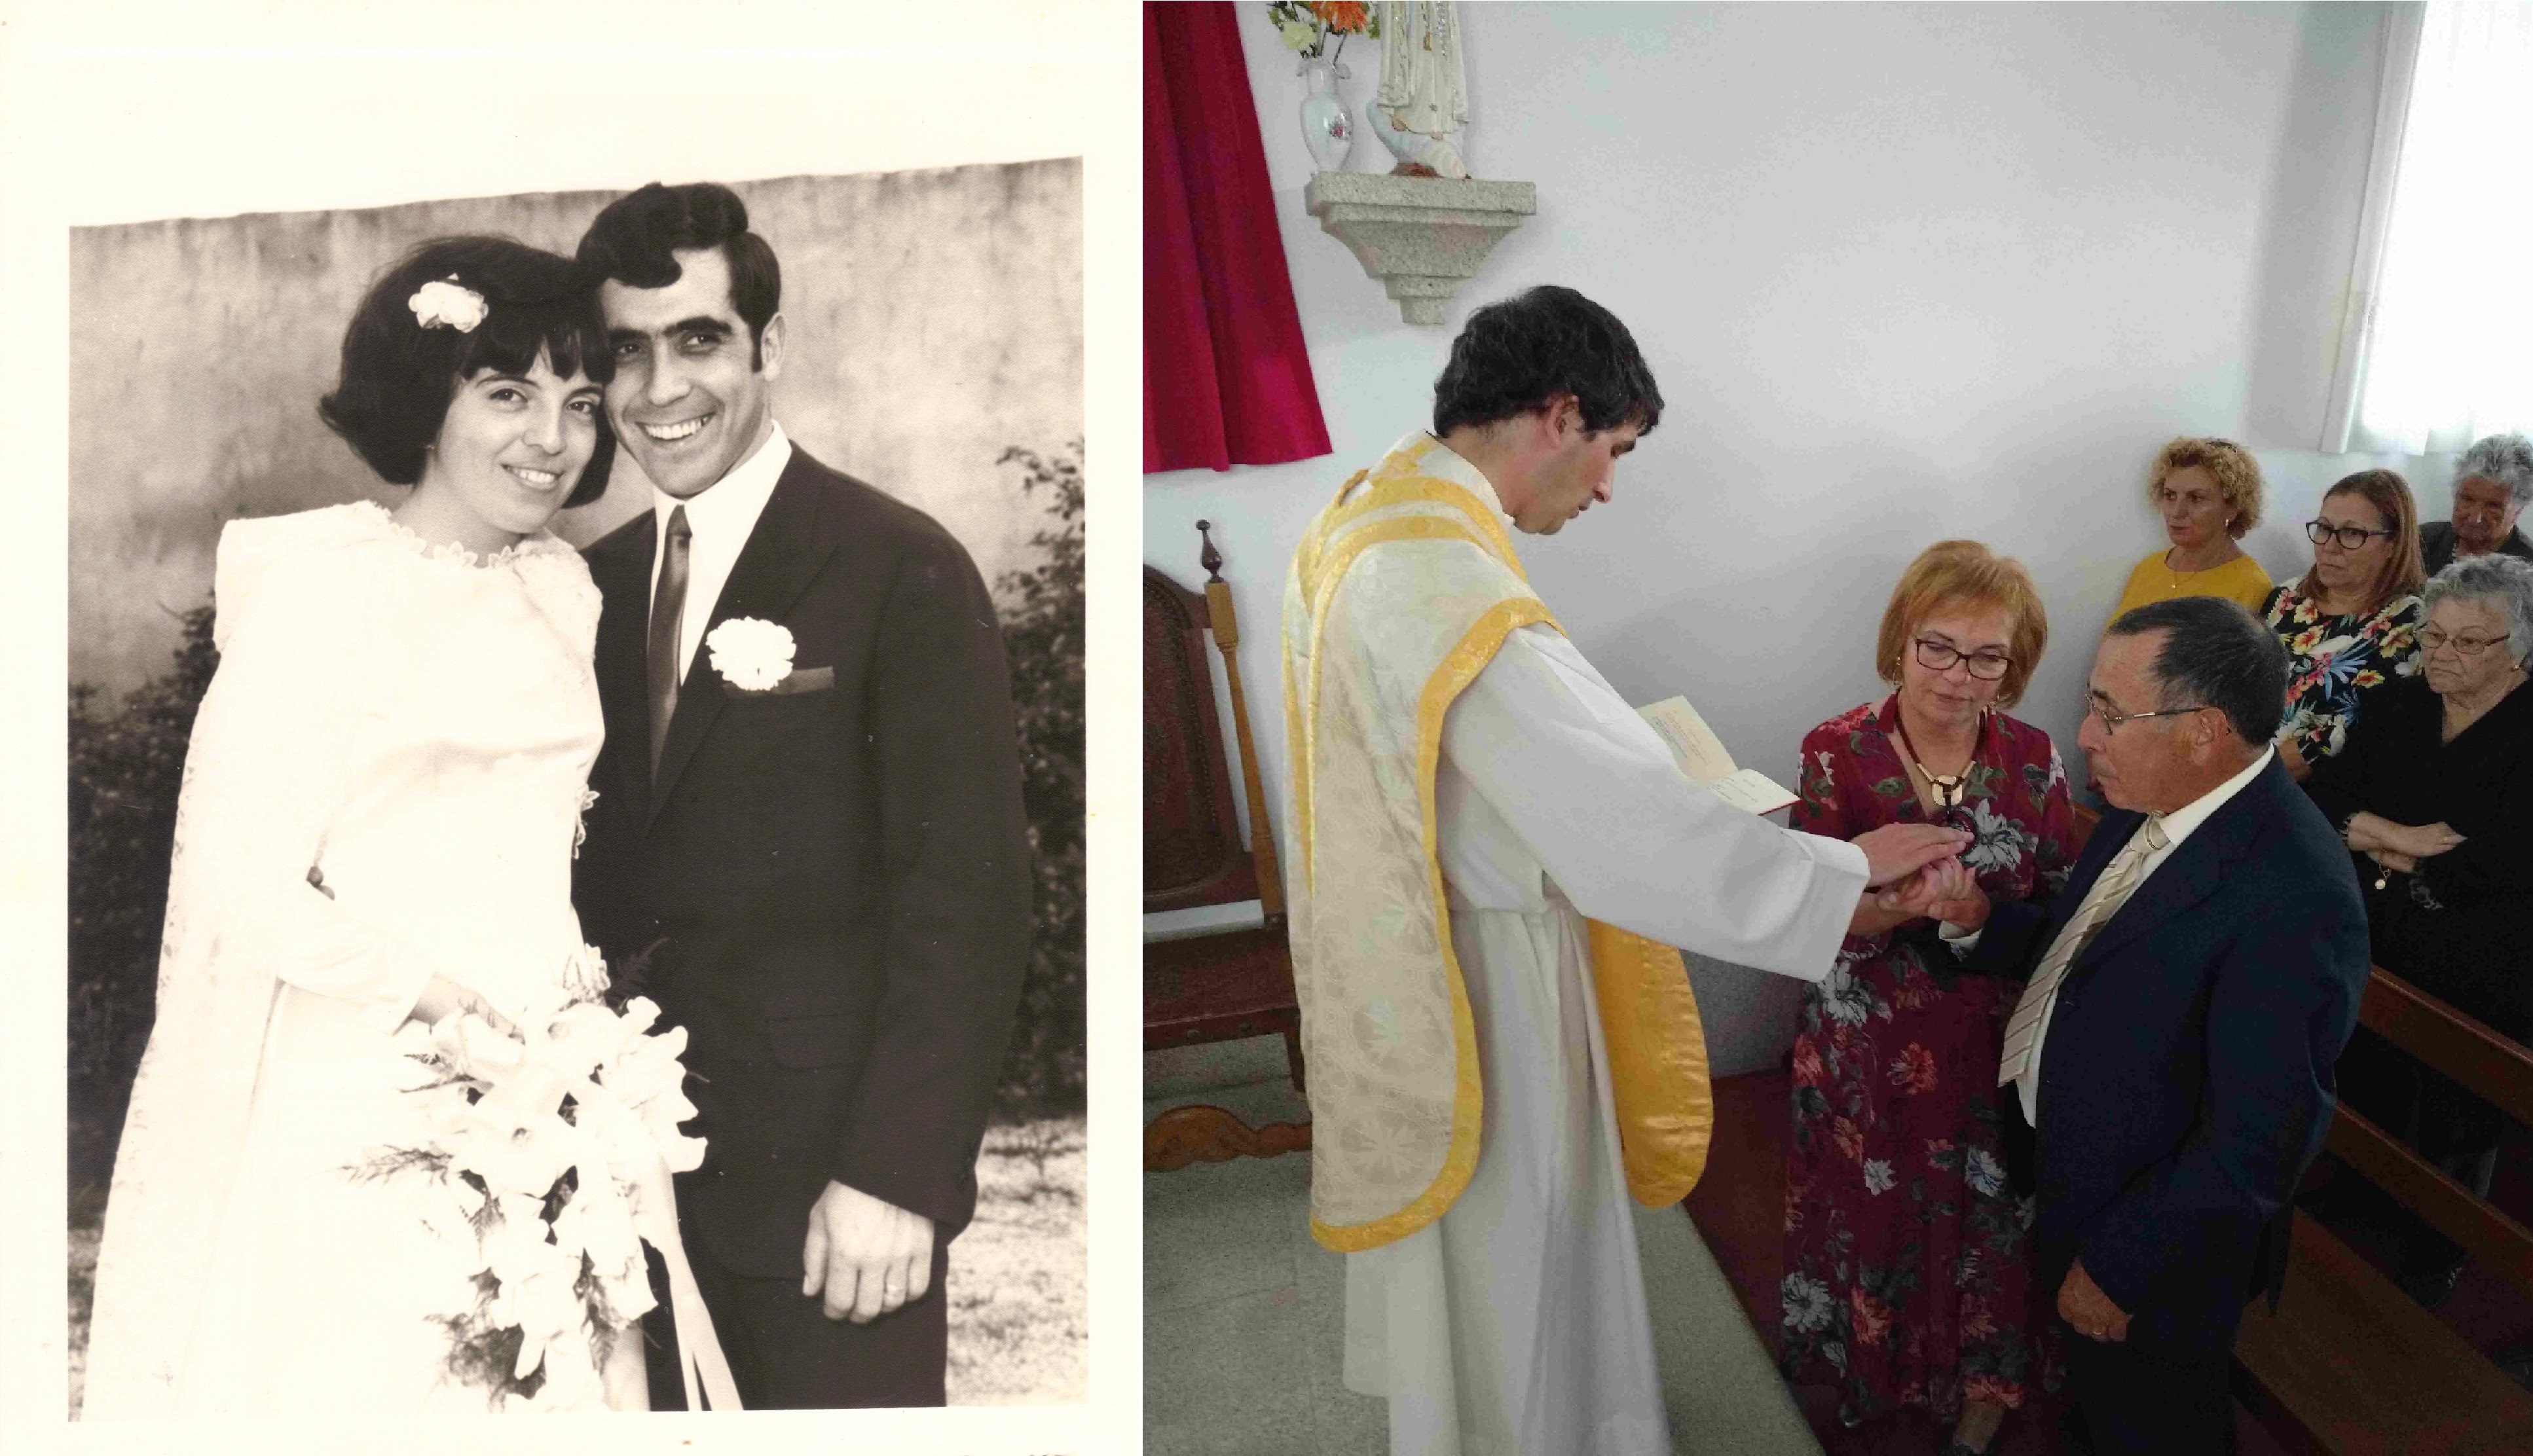 Casamento de Tiló Henriques e José Henriques, no Domingo, 12 de Outubro de 1969 e 50.º aniversário do casamento de Tiló Henriques e José Henriques, no Sábado, 12 de Outubro de 2019